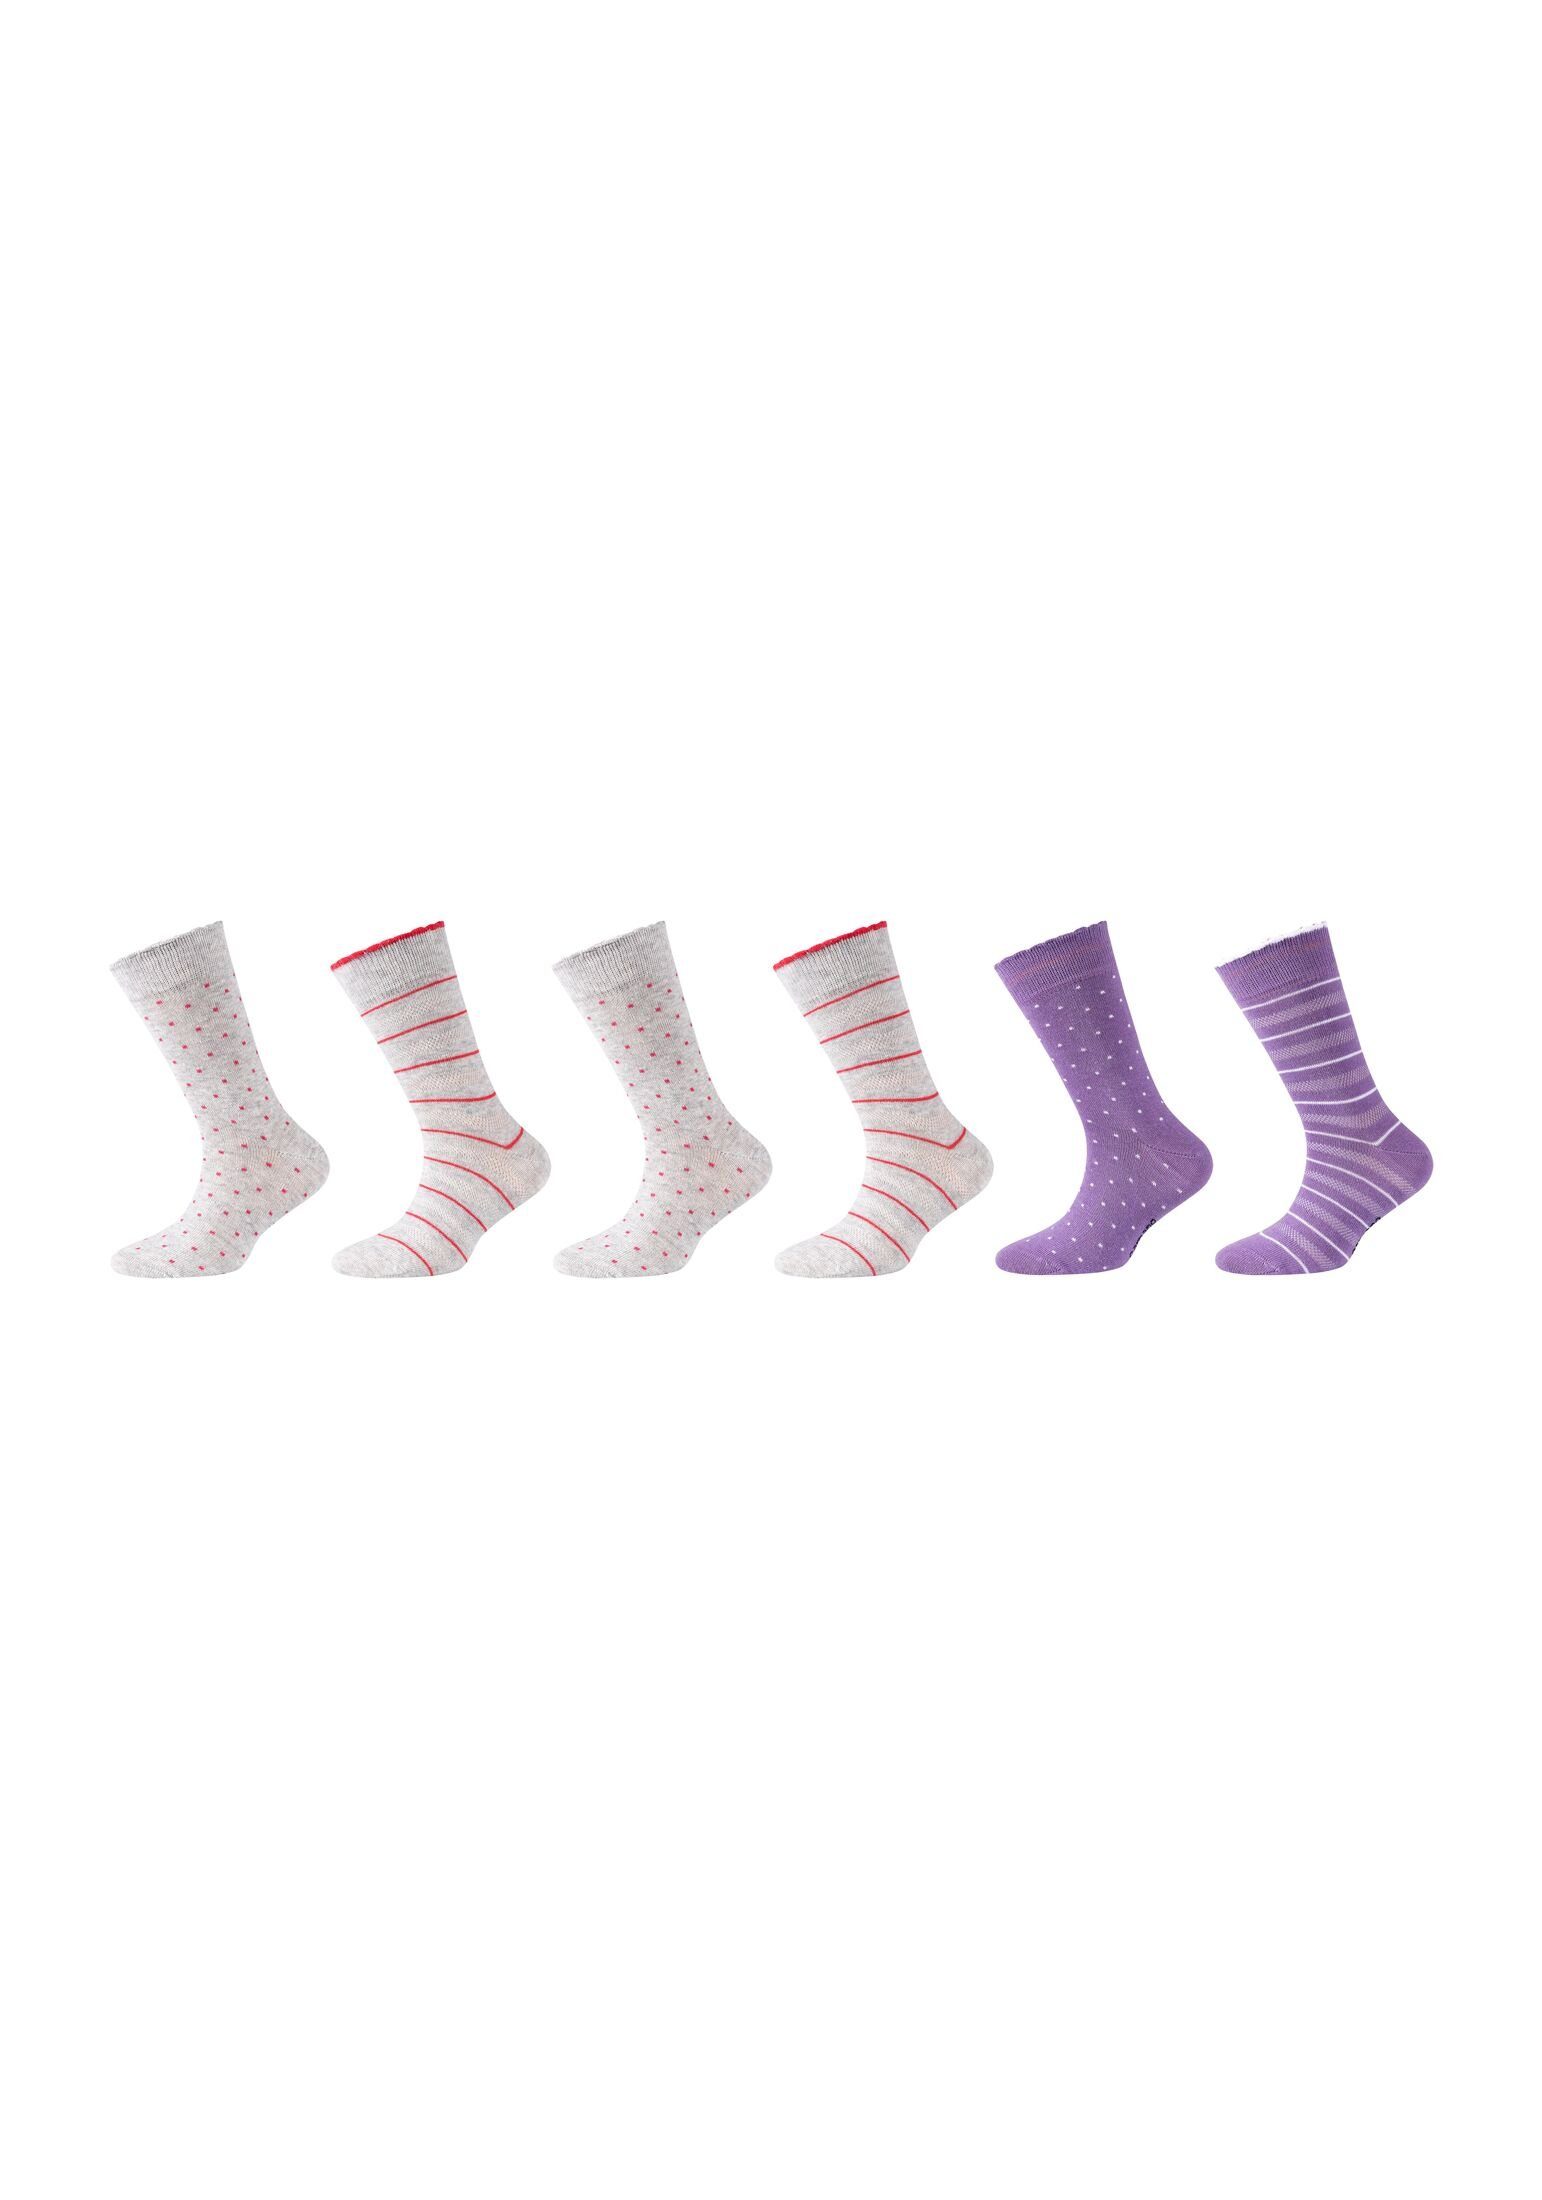 Camano Socken Socken 6er Pack lilac petal